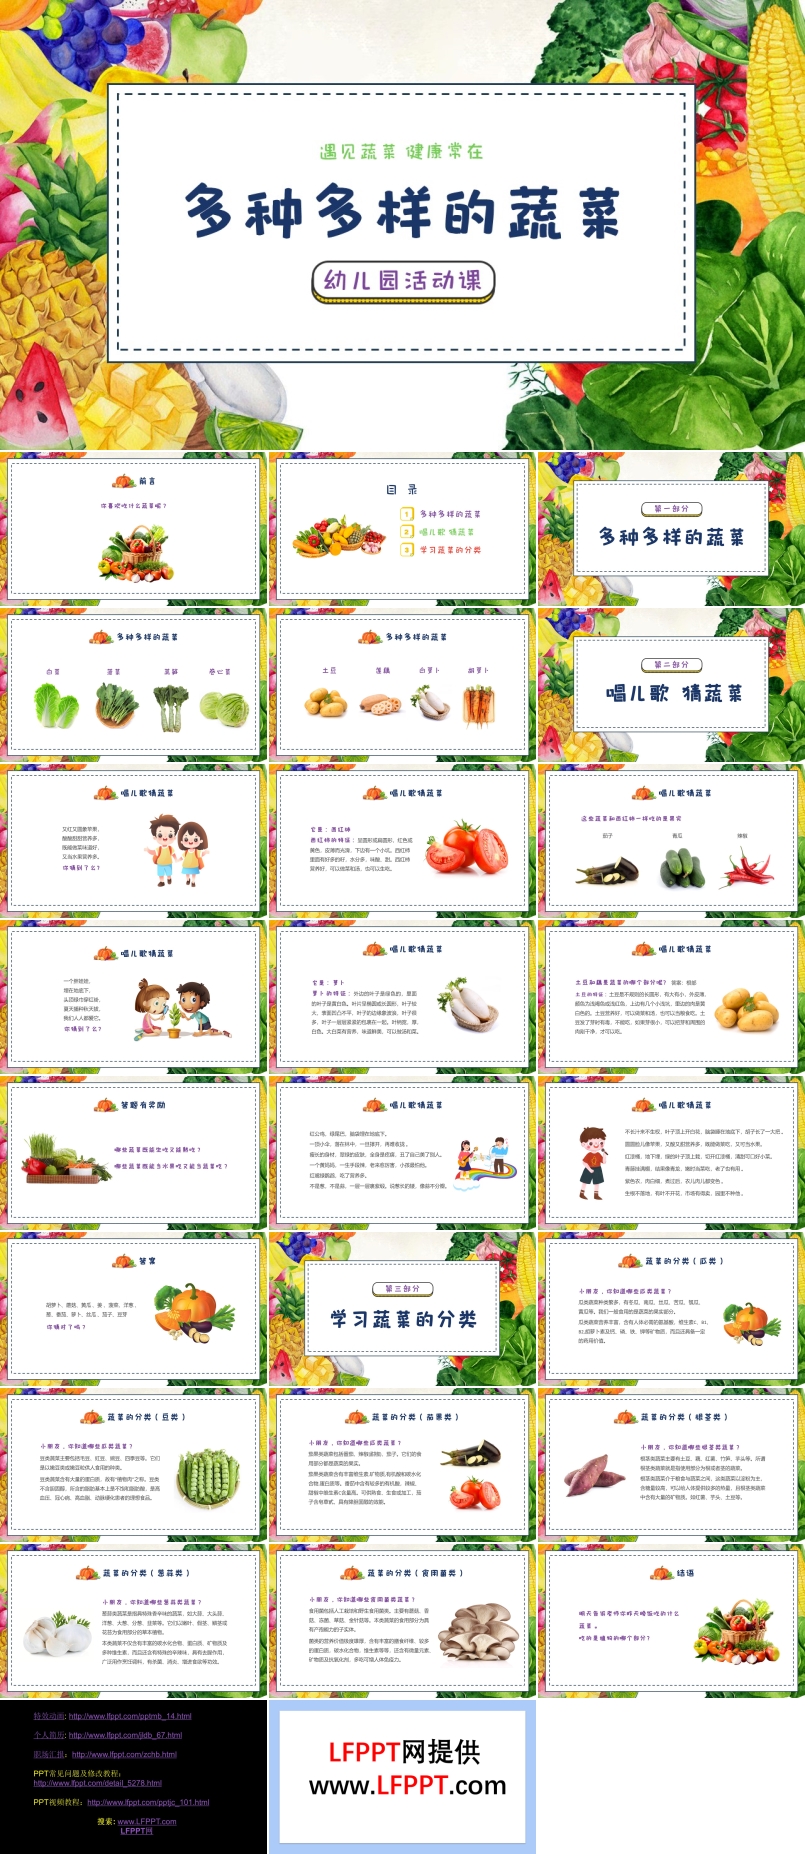 认识蔬菜幼儿园主题班会PPT多种多样的蔬菜